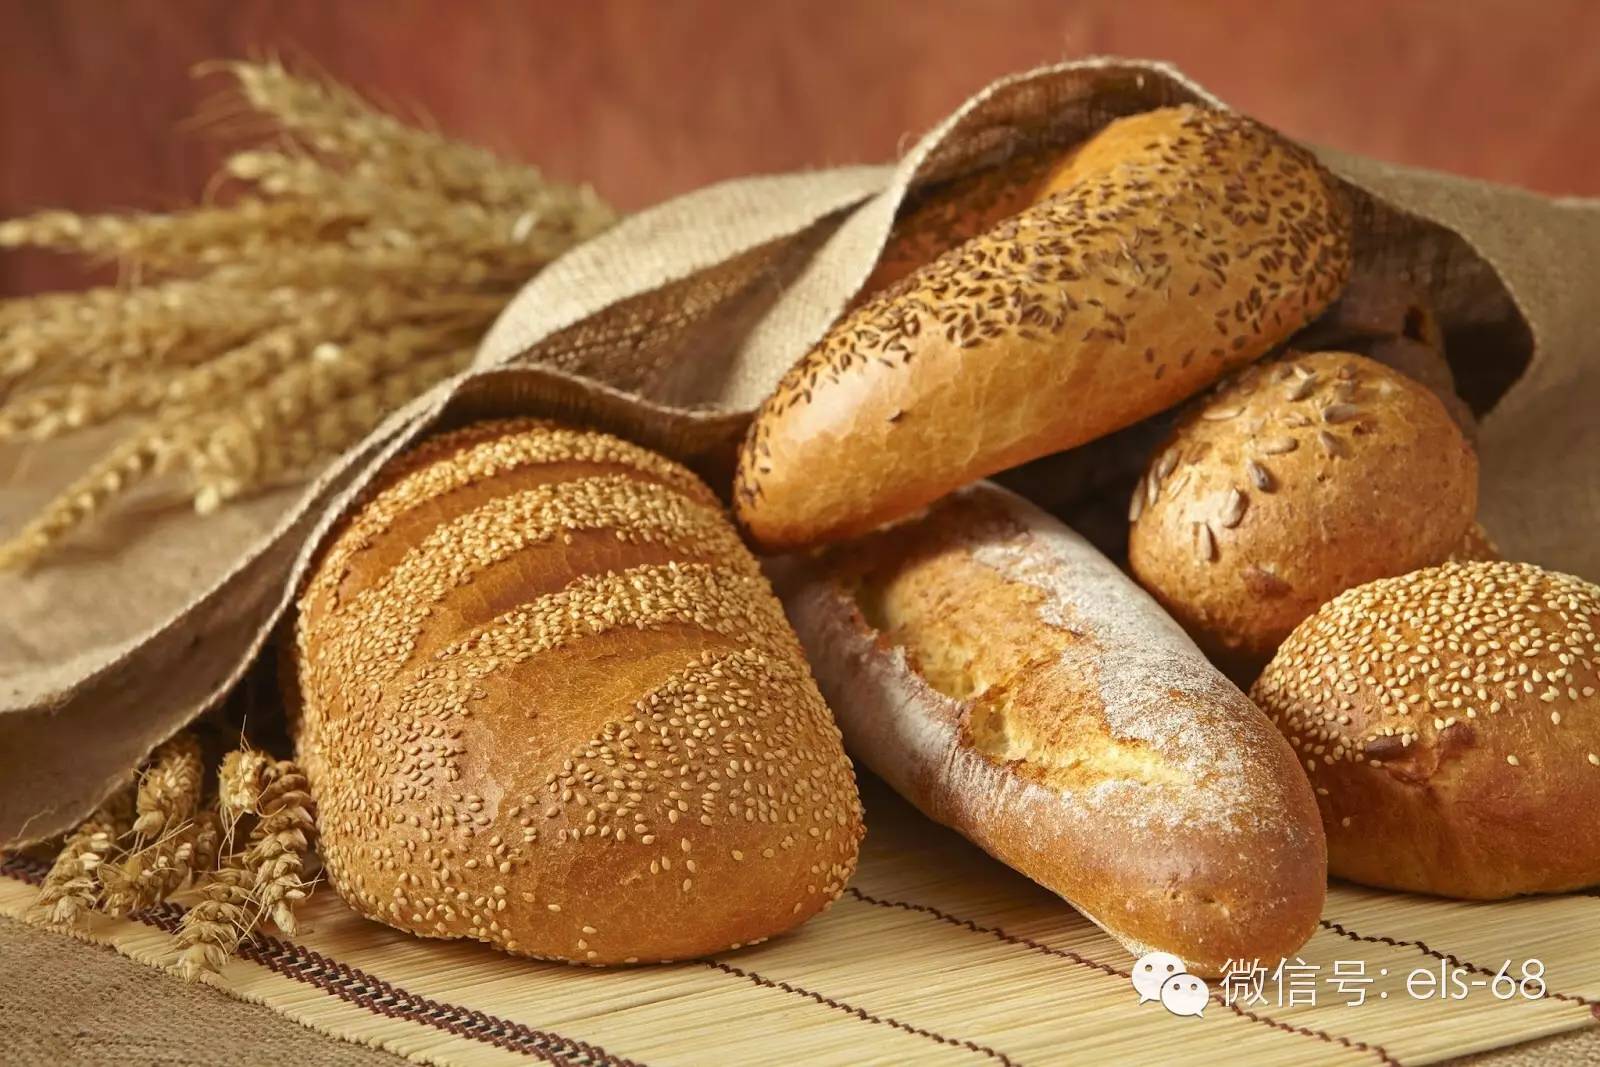 俄式面包 - 满洲利亚俄罗斯食品加工有限公司官网-纯正俄罗斯提拉米苏|香肠|列巴|特色俄罗斯食品